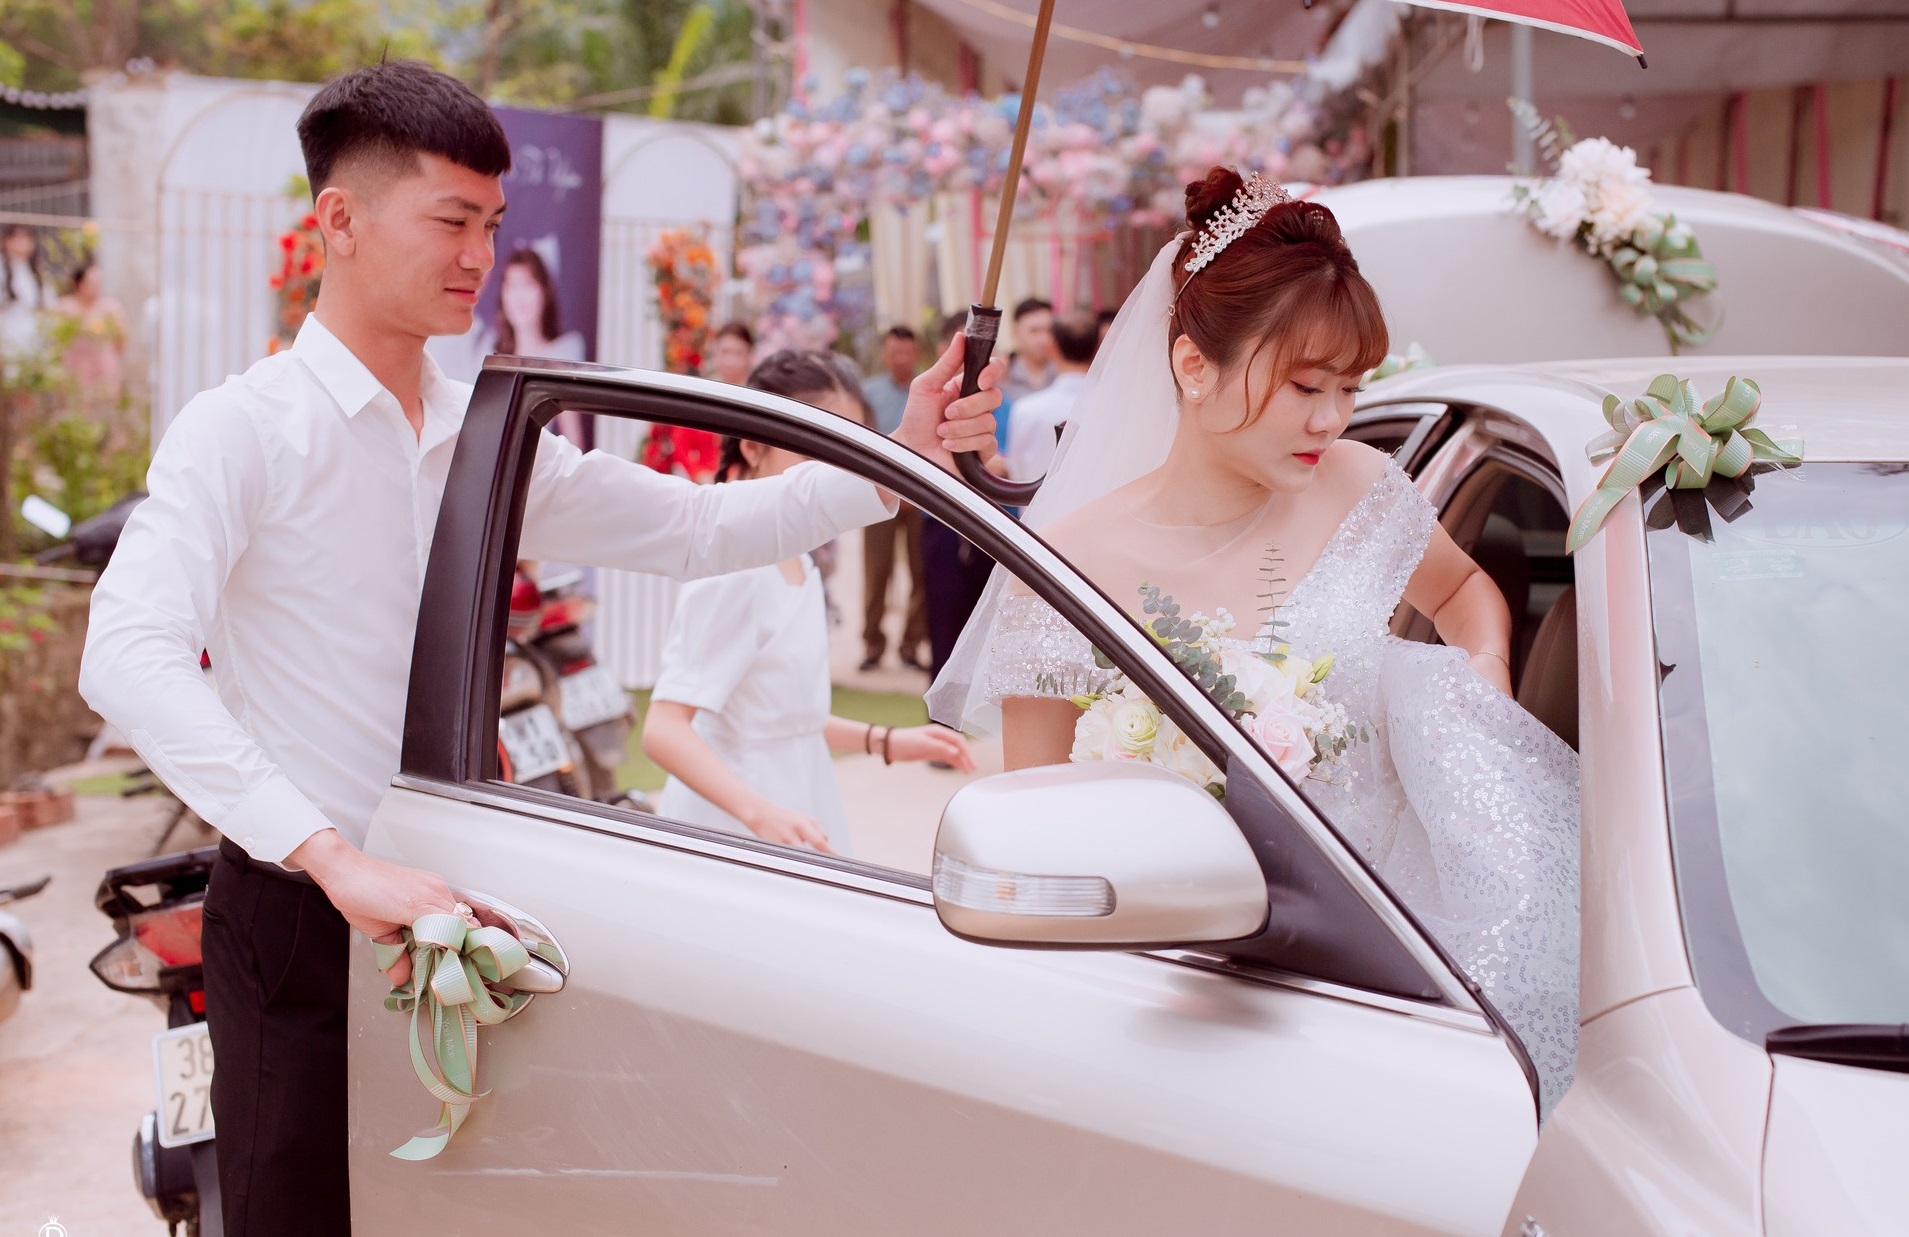 Hà Tĩnh: Chú rể rước dâu bằng 20 xe đầu kéo khiến nhà gái choáng ngợp - Ảnh 7.